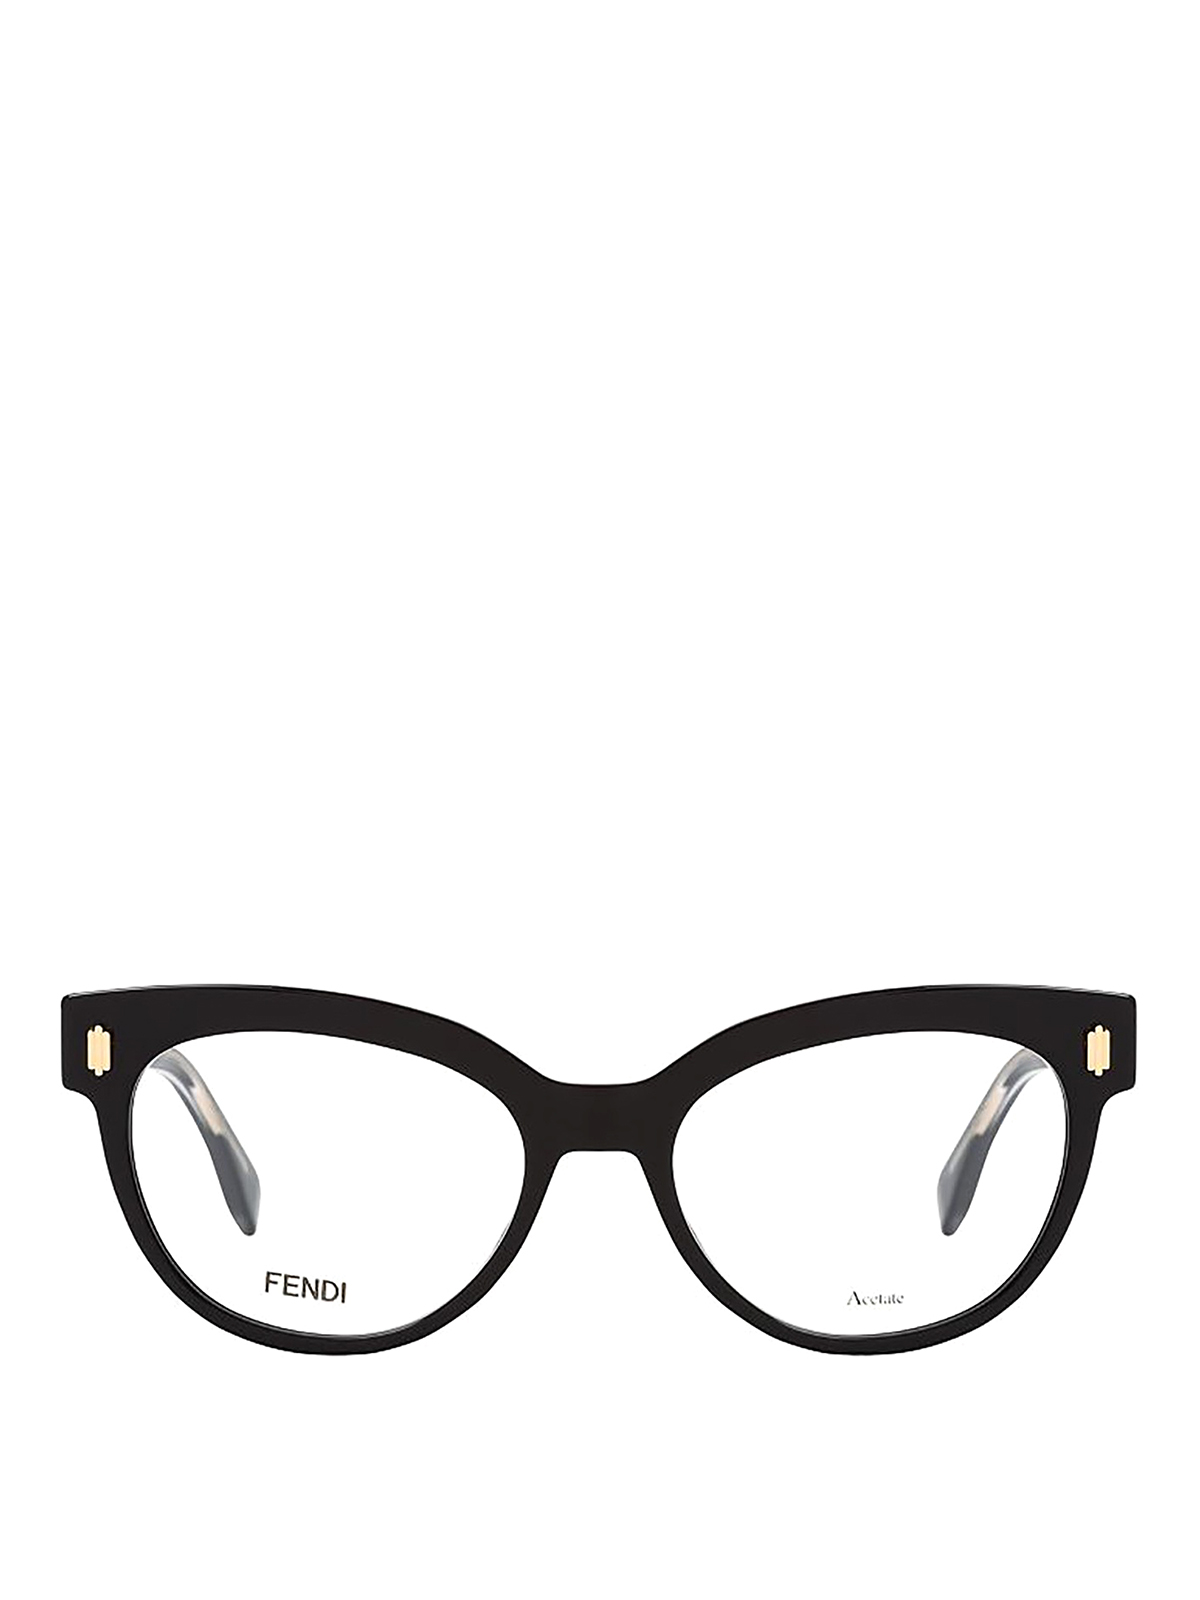 Cat-eye glasses